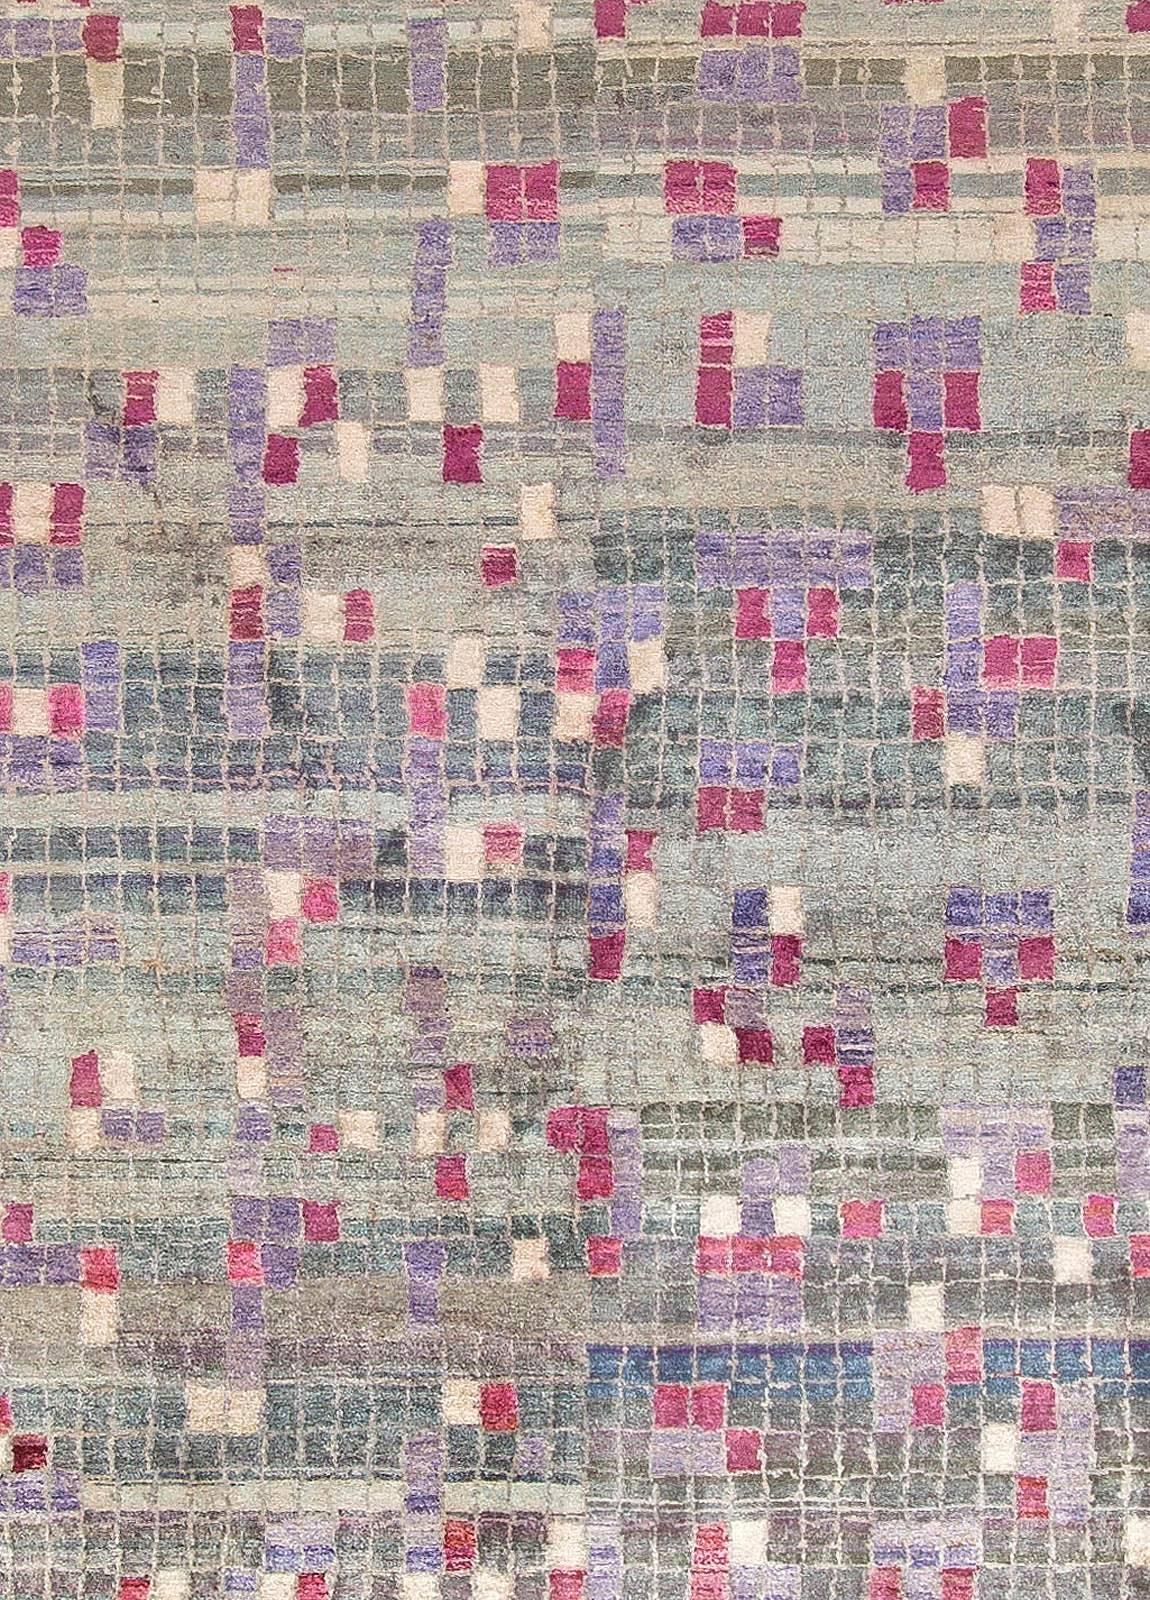 Indian Modern Geometric POOL Tile Handmade Wool Rug by Doris Leslie Blau For Sale